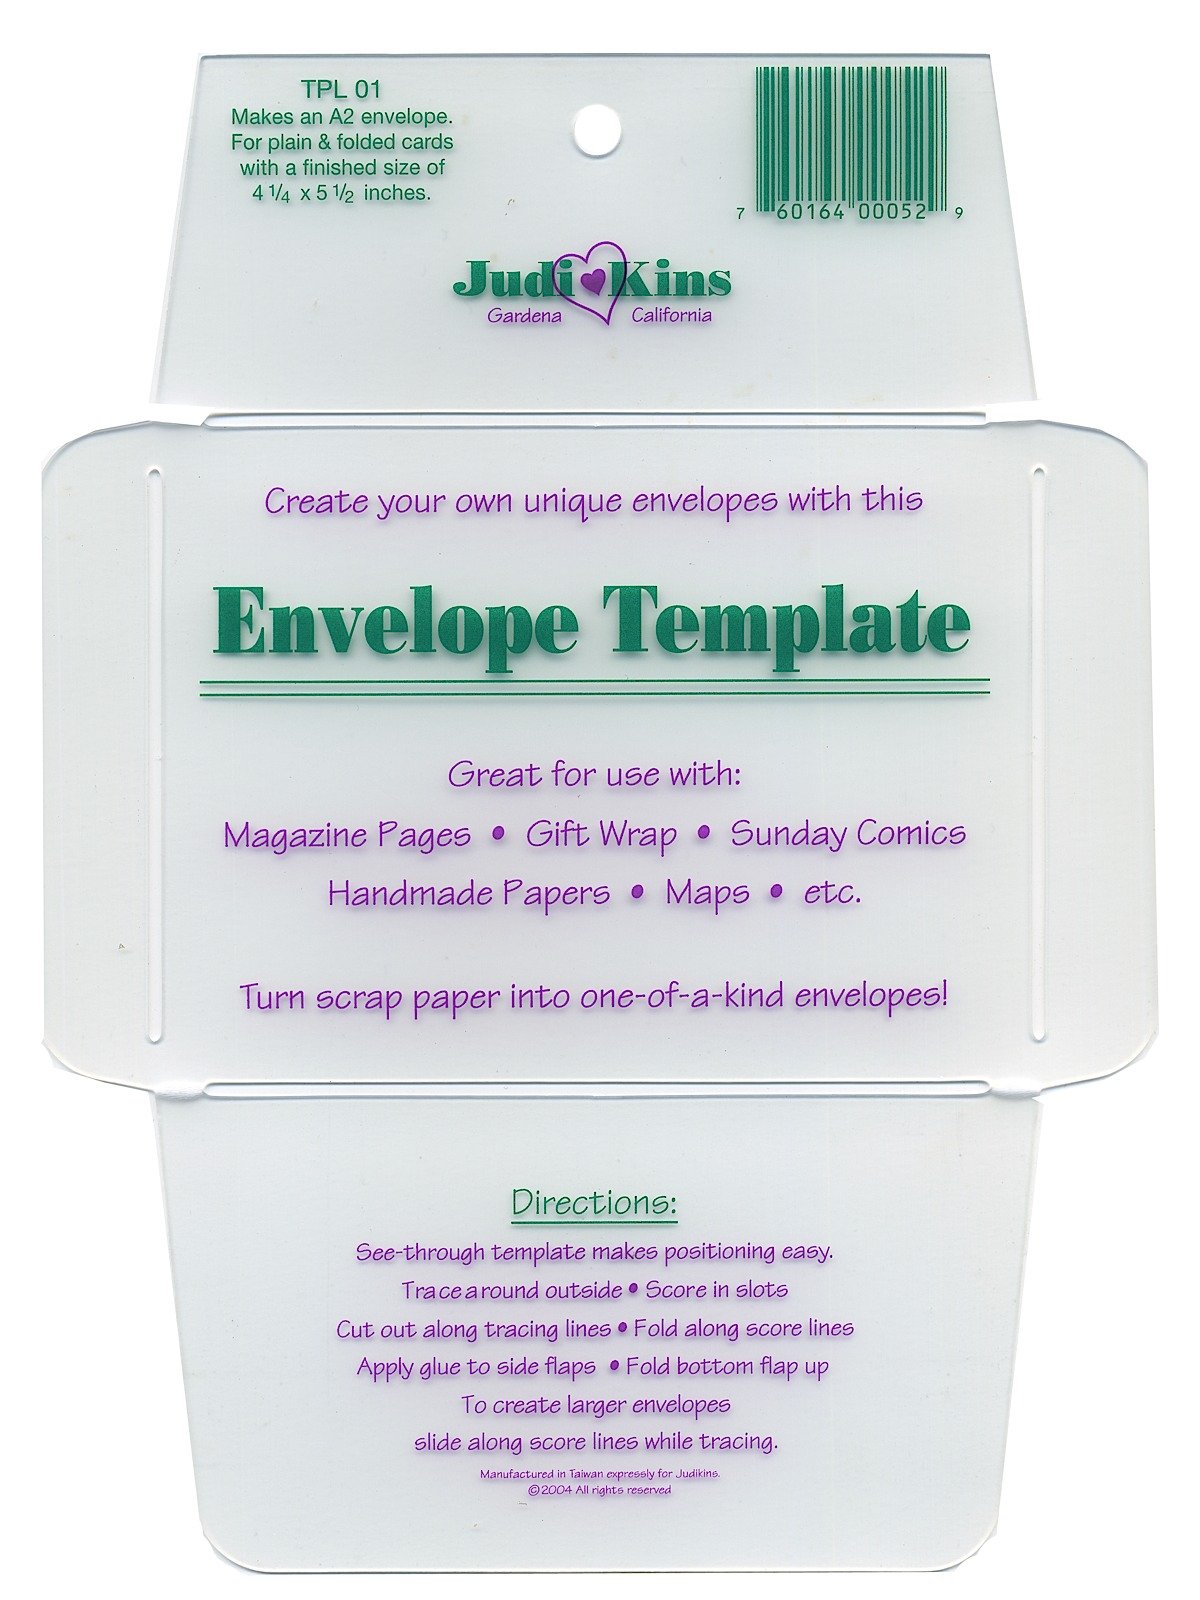 JudiKins - Envelope Templates